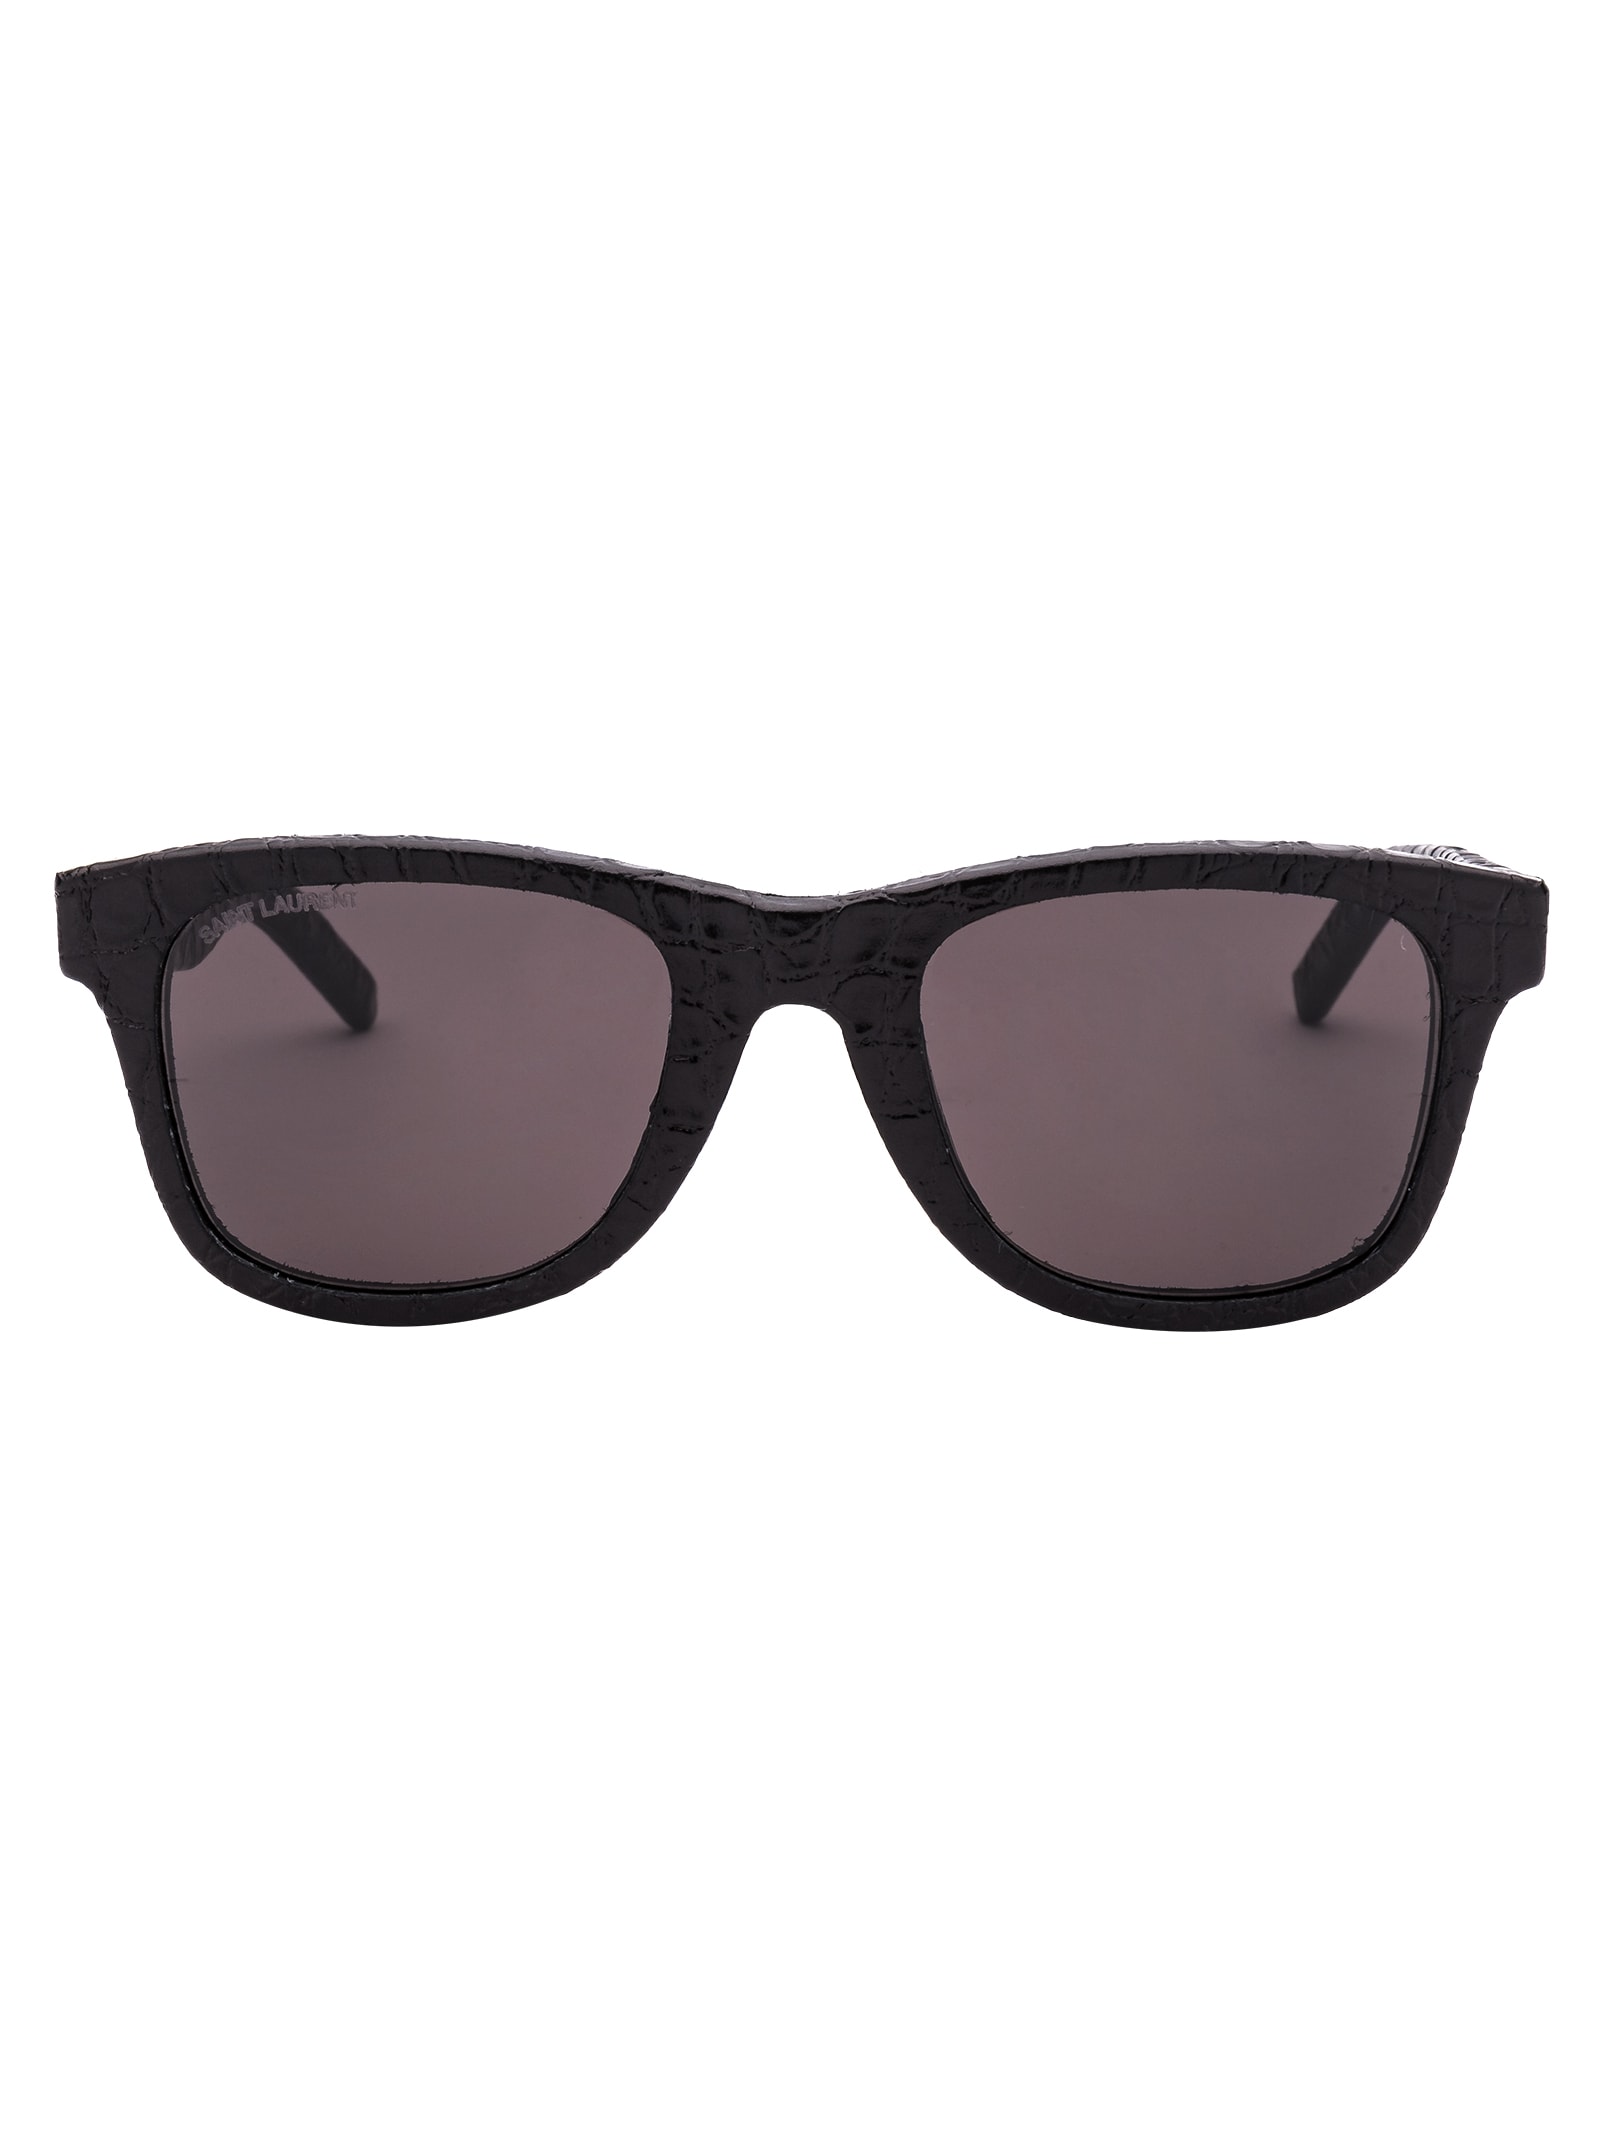 Saint Laurent Eyewear Sl 51 Sunglasses